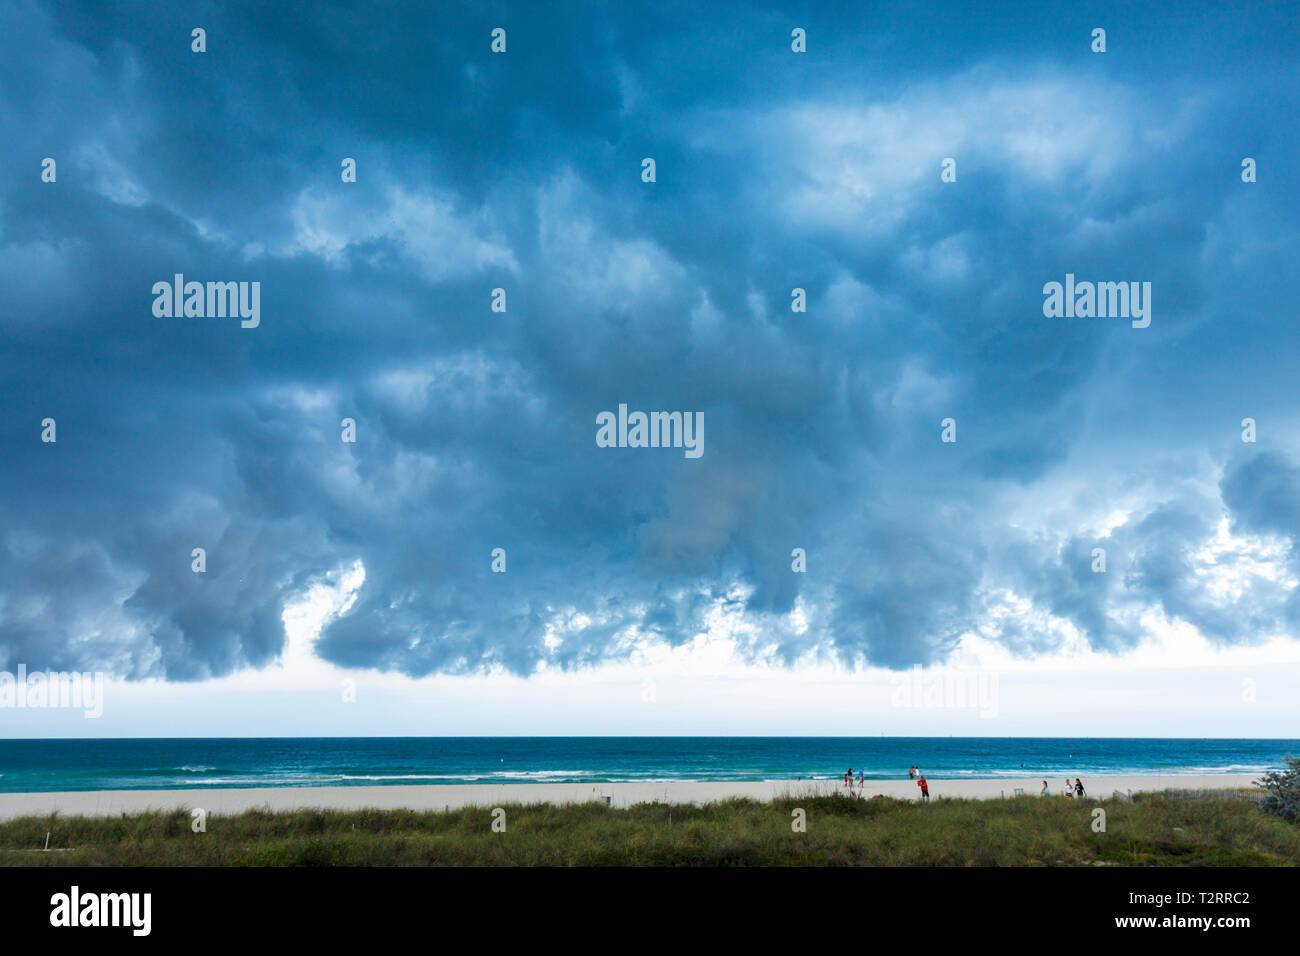 Miami Beach Florida,Océano Atlántico,agua,frente frío,tiempo,tormenta,tormenta,gris,nubes,nublado,amenazante,ominoso,cielo oscuro,FL090417031 Foto de stock